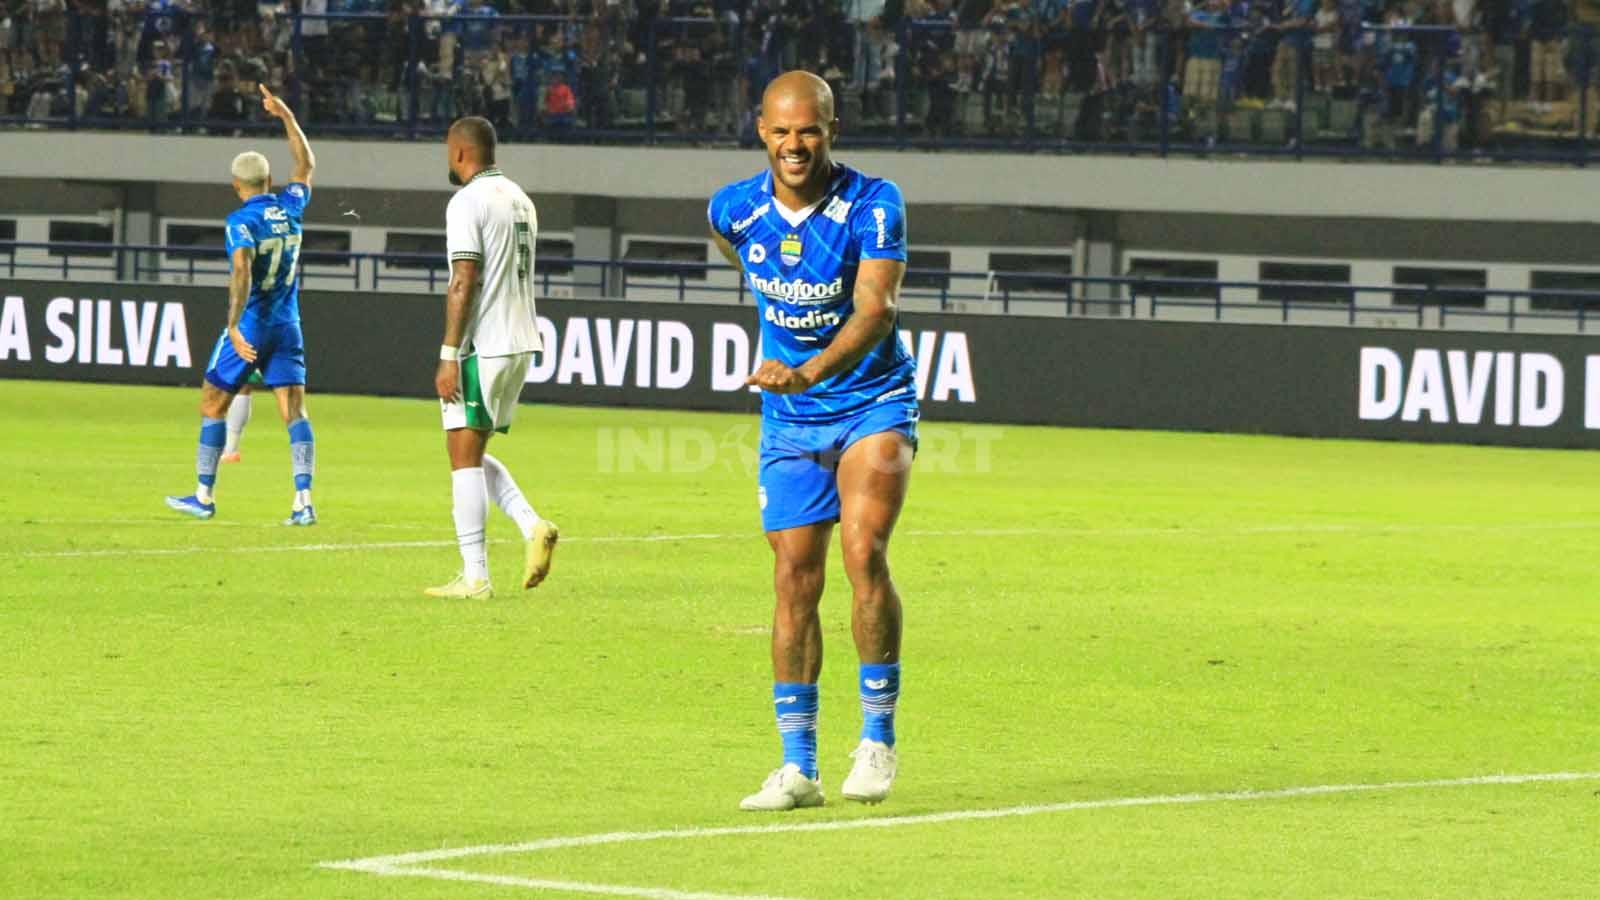 Striker Persib, David da Silva merayakan golnya ke gawang PSS, pada pertandingan pekan ke-17 kompetisi Liga 1 2023-2024 di Stadion GBLA, Kota Bandung, Sabtu (28/10/23). - INDOSPORT